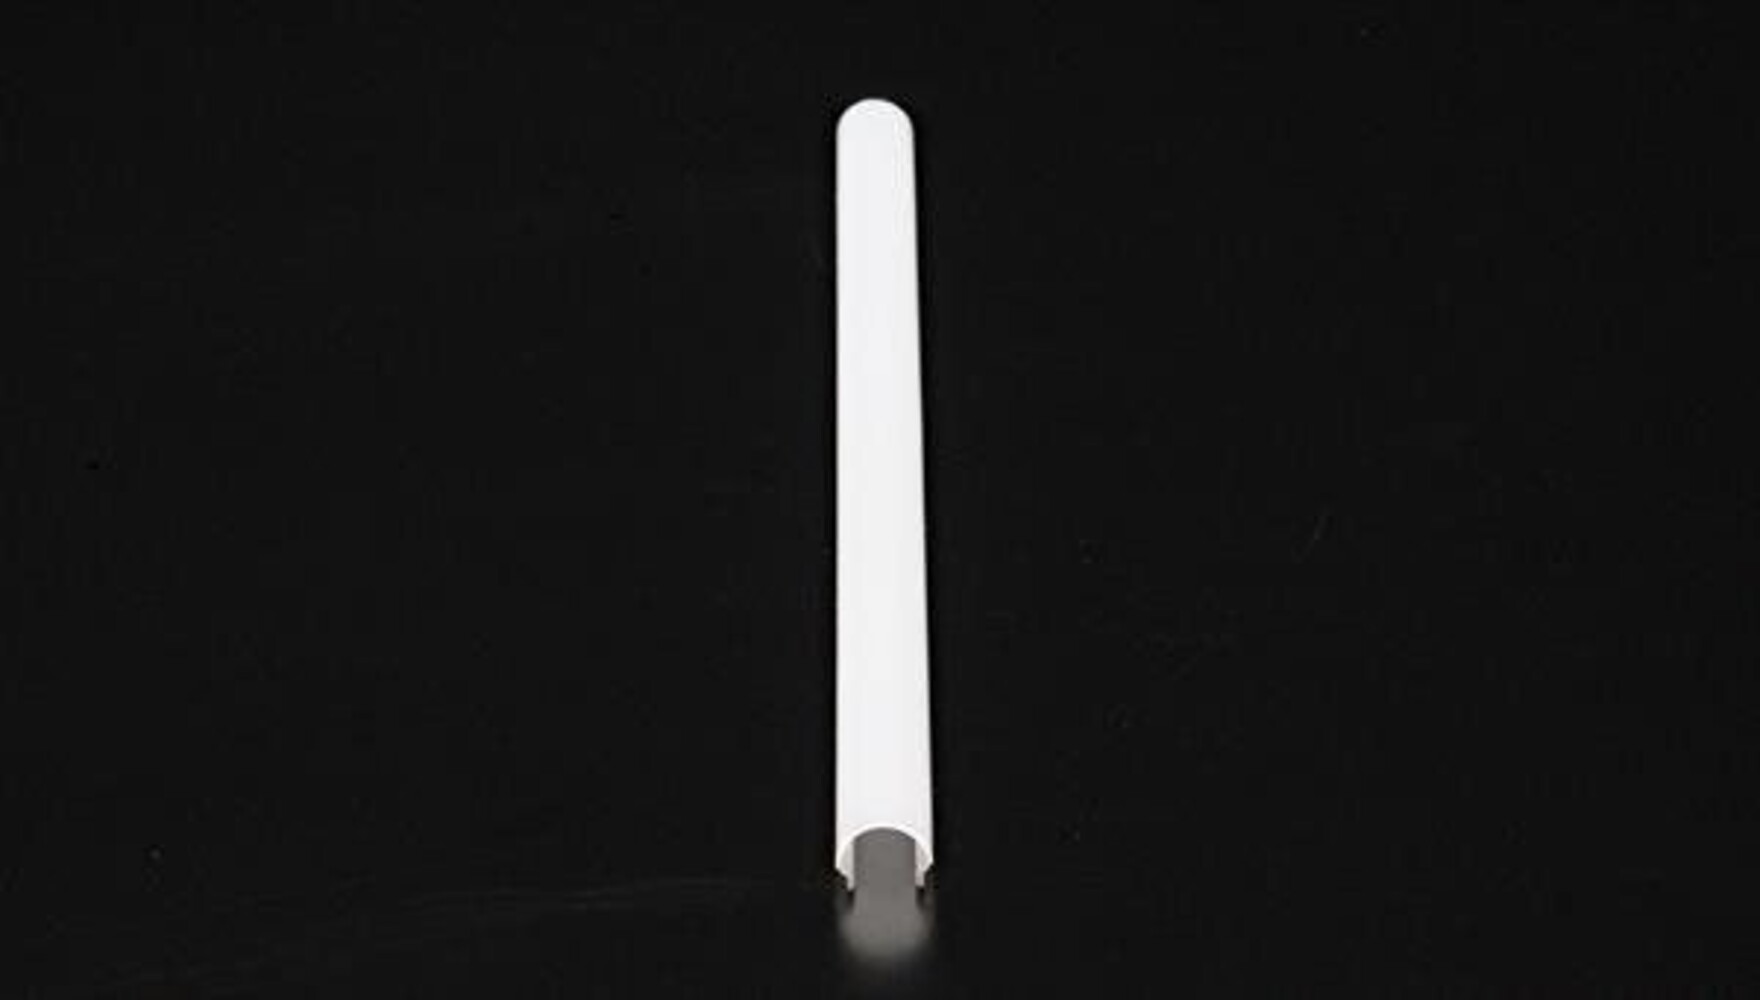 Detailansicht der edlen Abdeckung von der Marke Deko-Light in einer Länge von 3000 mm, Breite von 16 mm und Höhe zwischen 13 und 15 mm